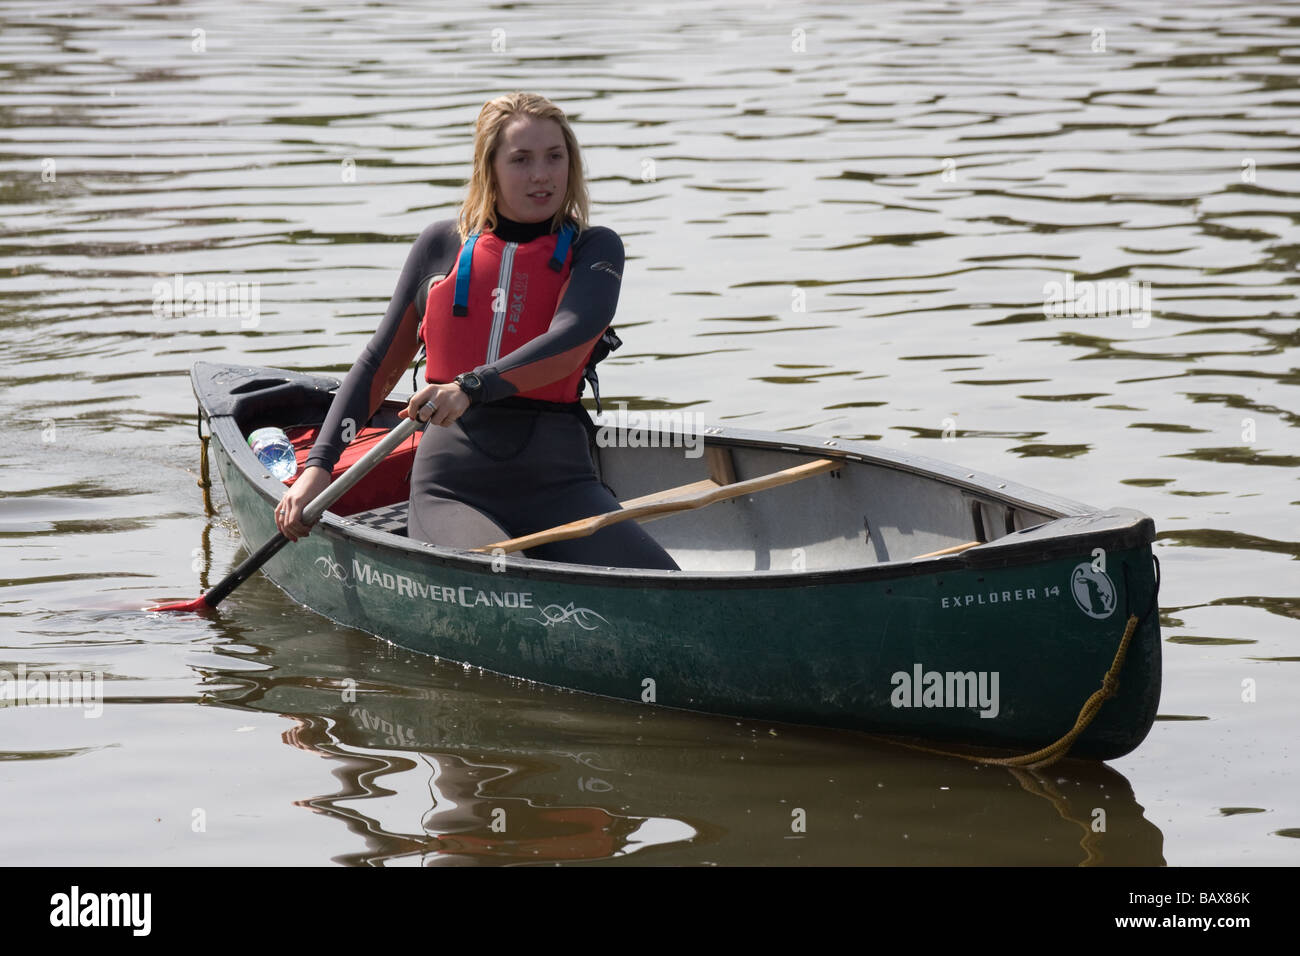 Le sport de l'eau canoë canadien canoë rivière Medway yalding angleterre kent uk europe Banque D'Images